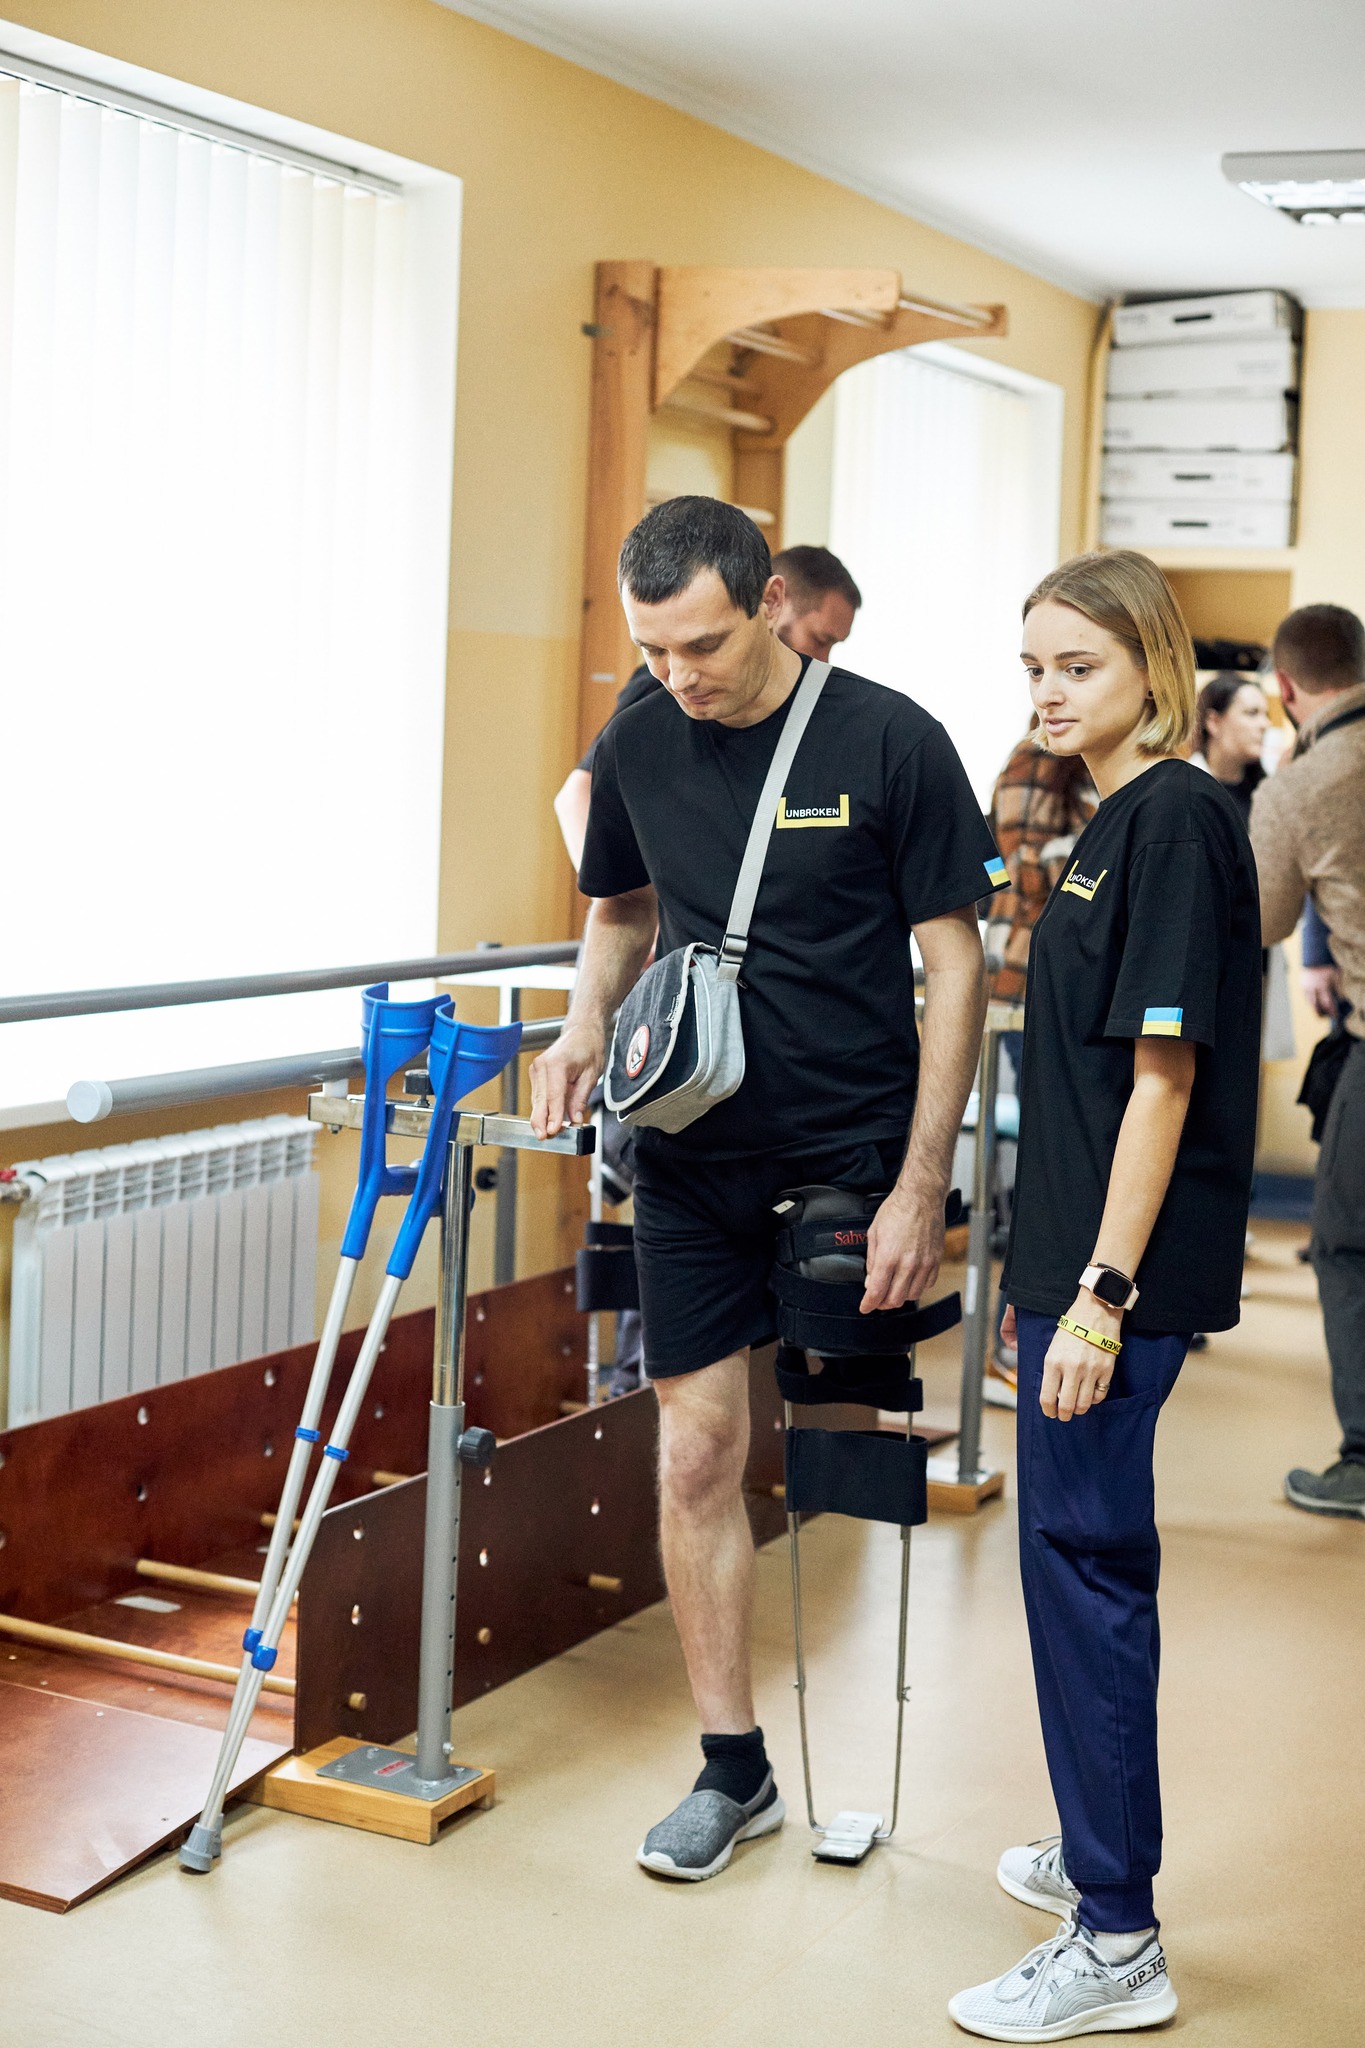 Ucraina: aperto un laboratorio di protesi per i feriti